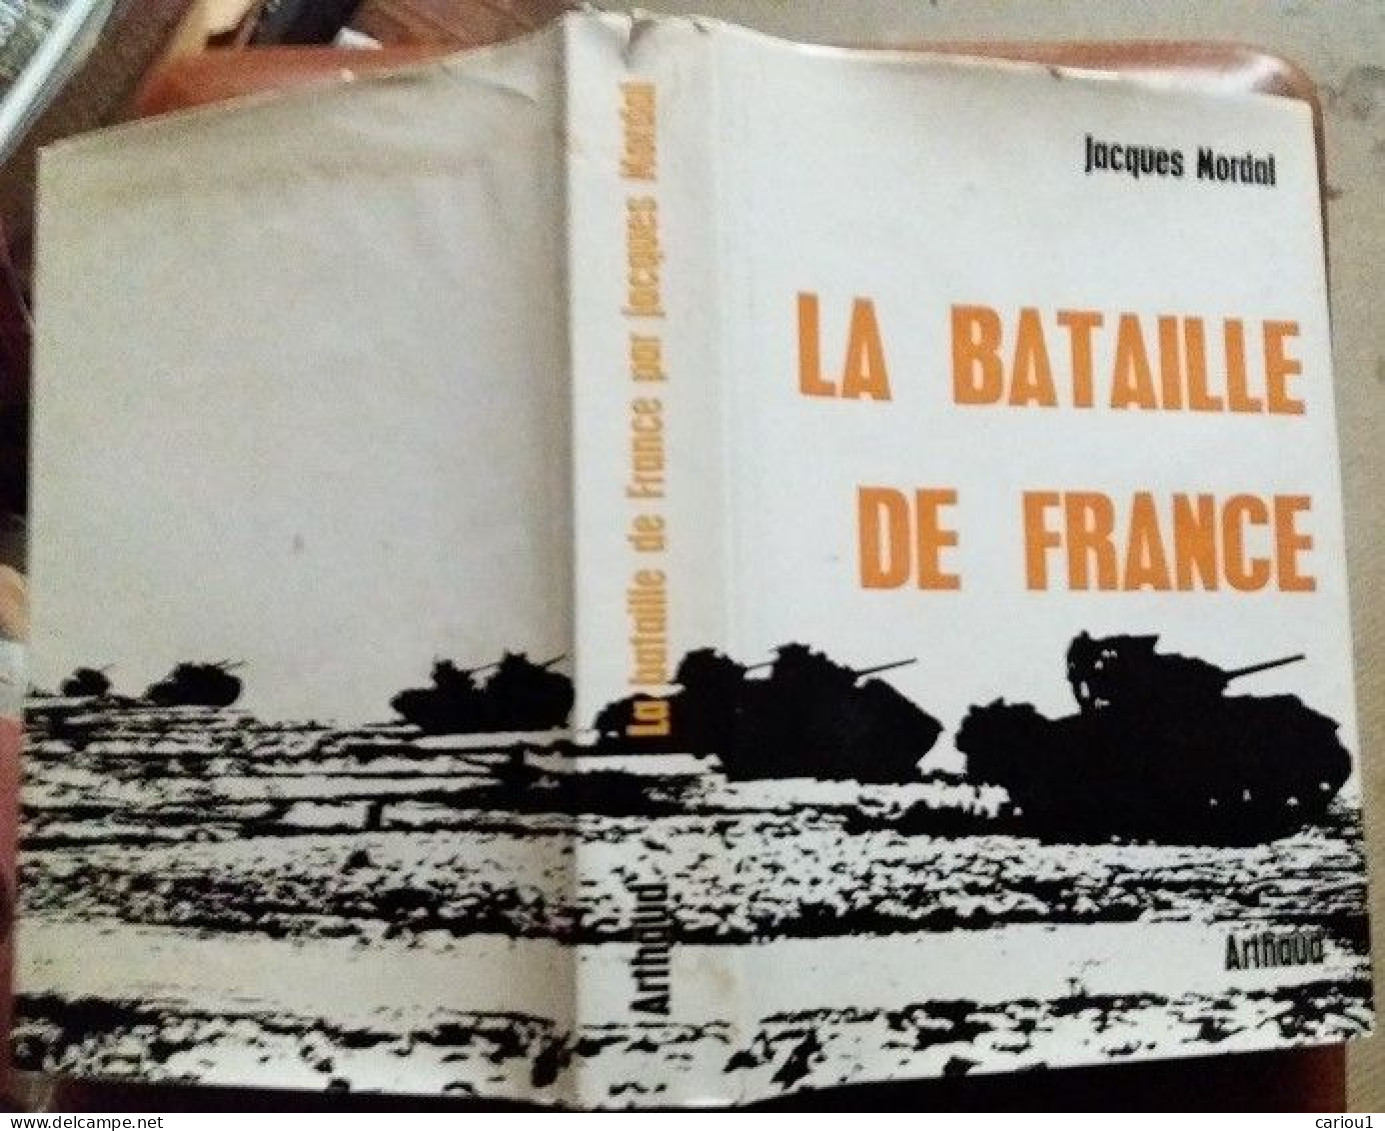 C1 Jacques MORDAL La BATAILLE DE FRANCE 1944 1945 Relie ILLUSTRE Epuise CARTES Port Inclus France - Francés